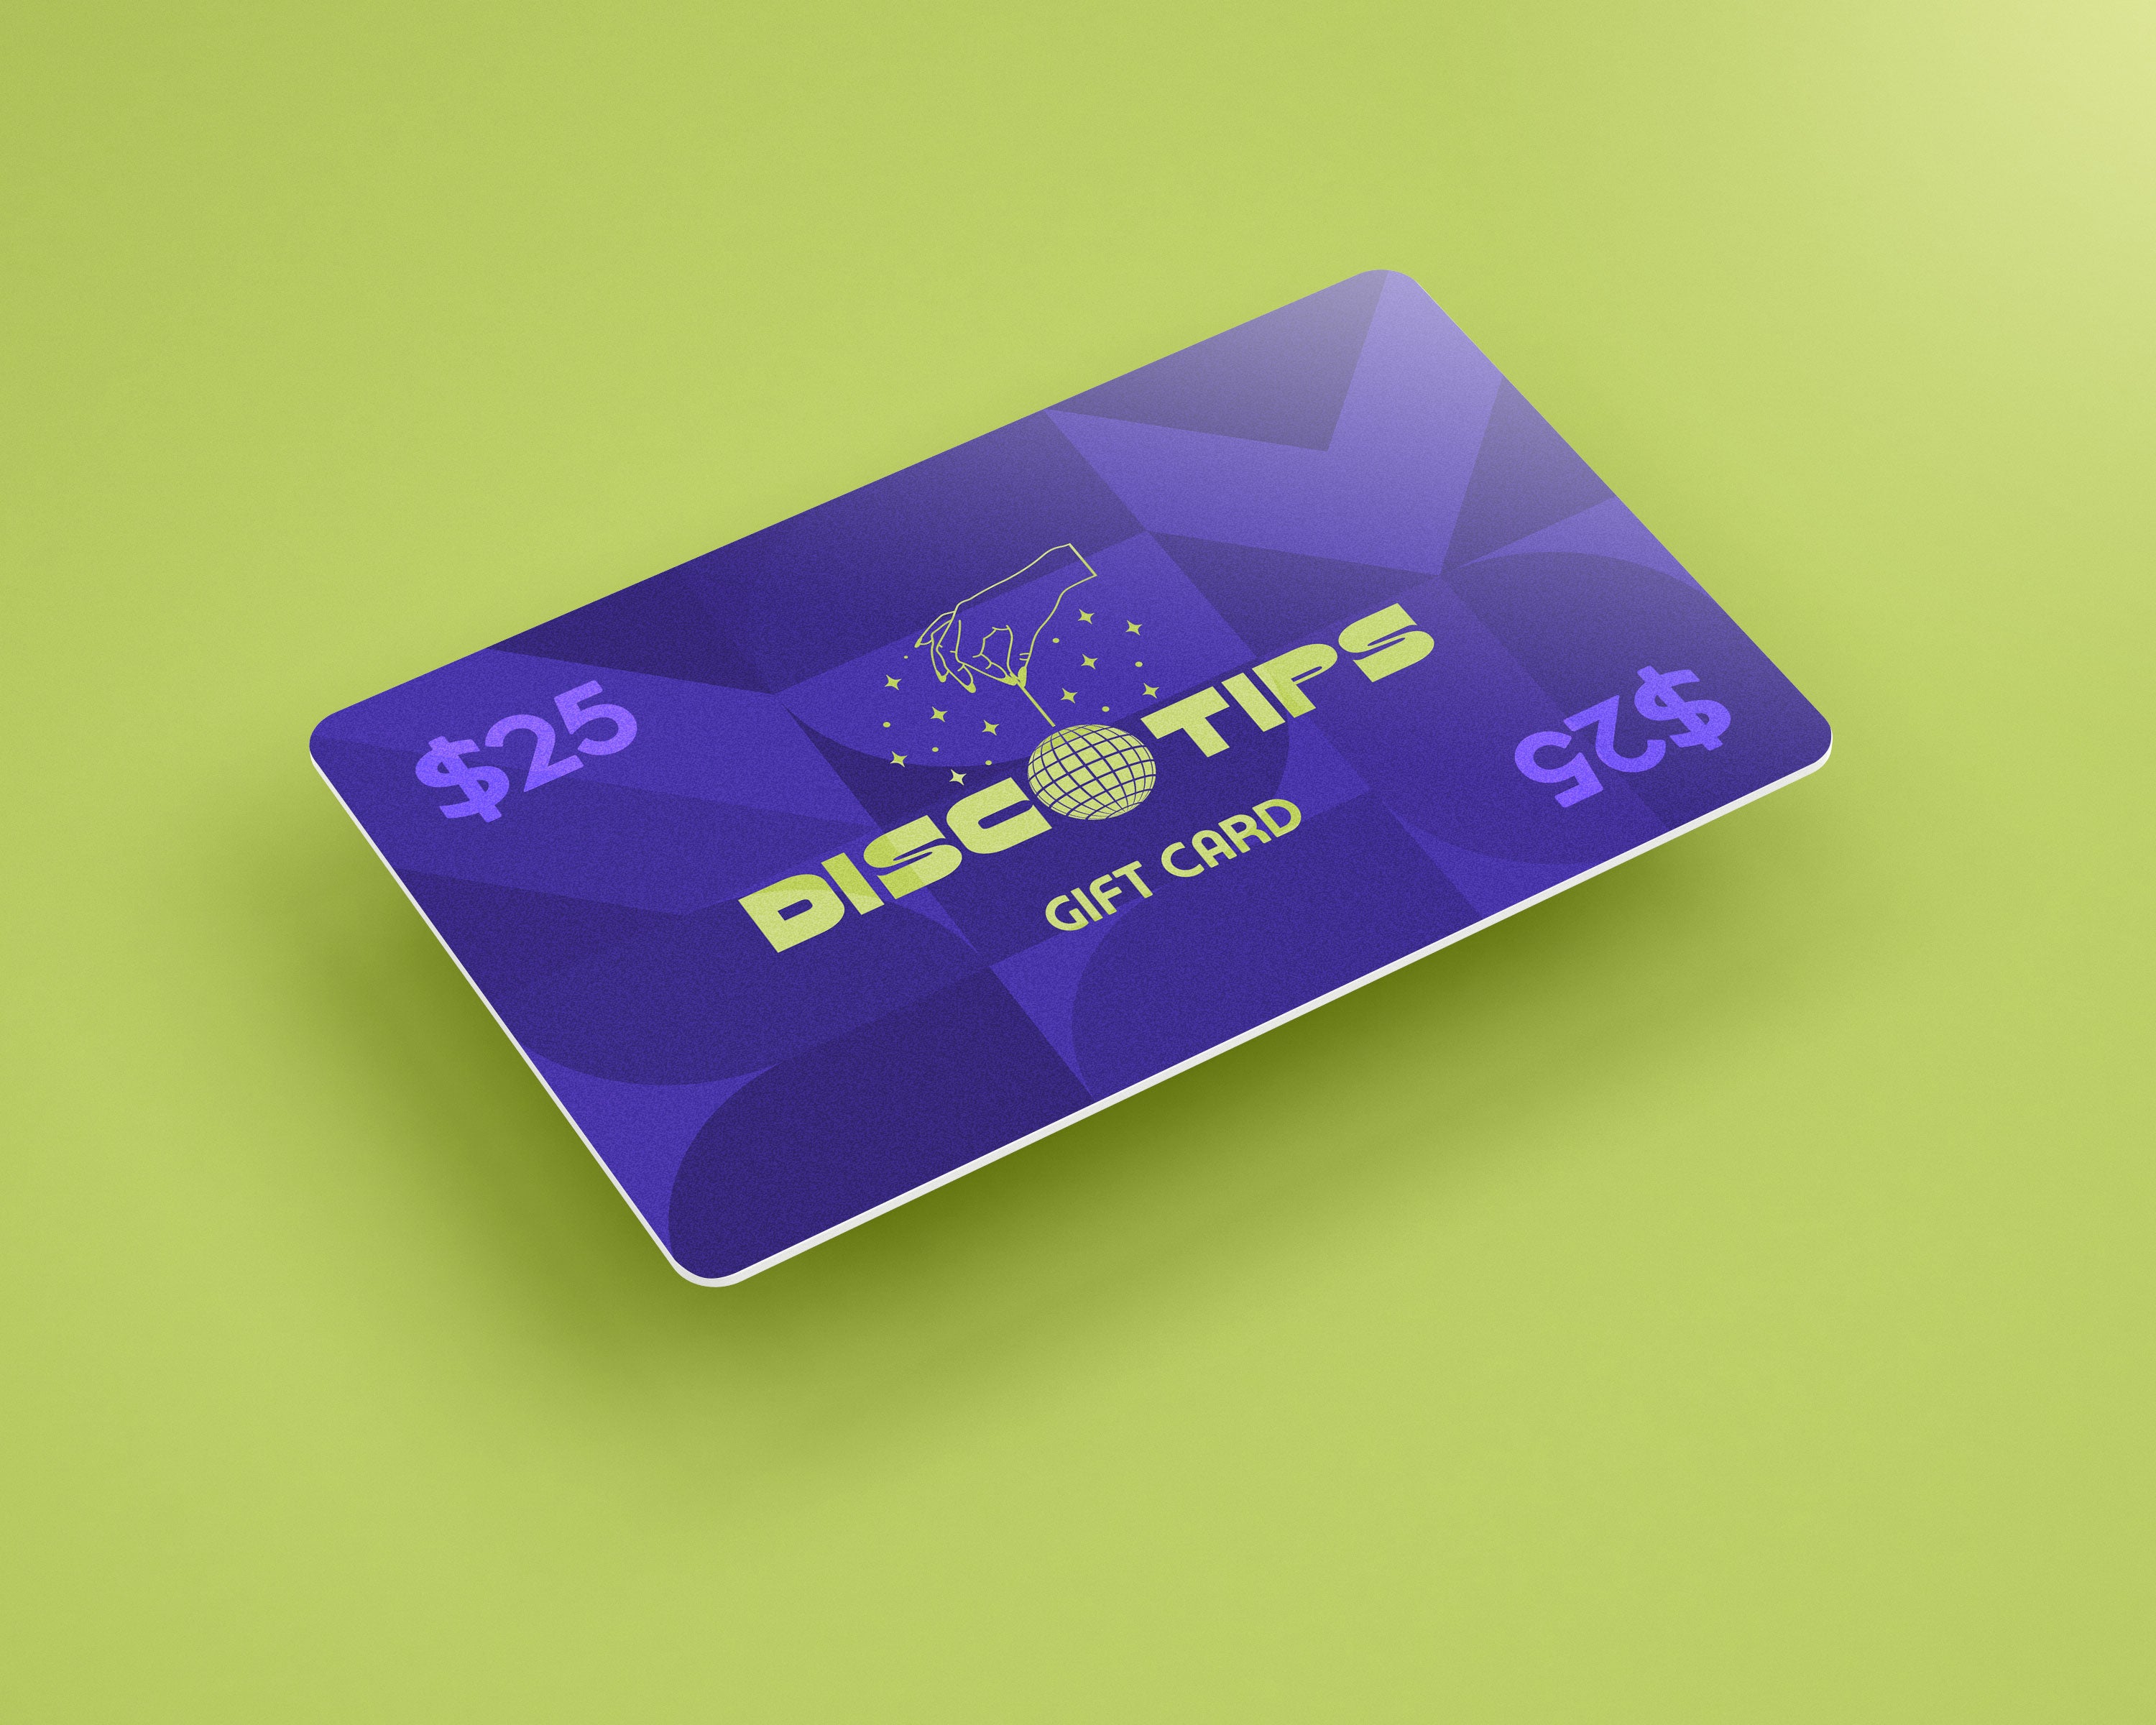 Disco Tips Gift Card